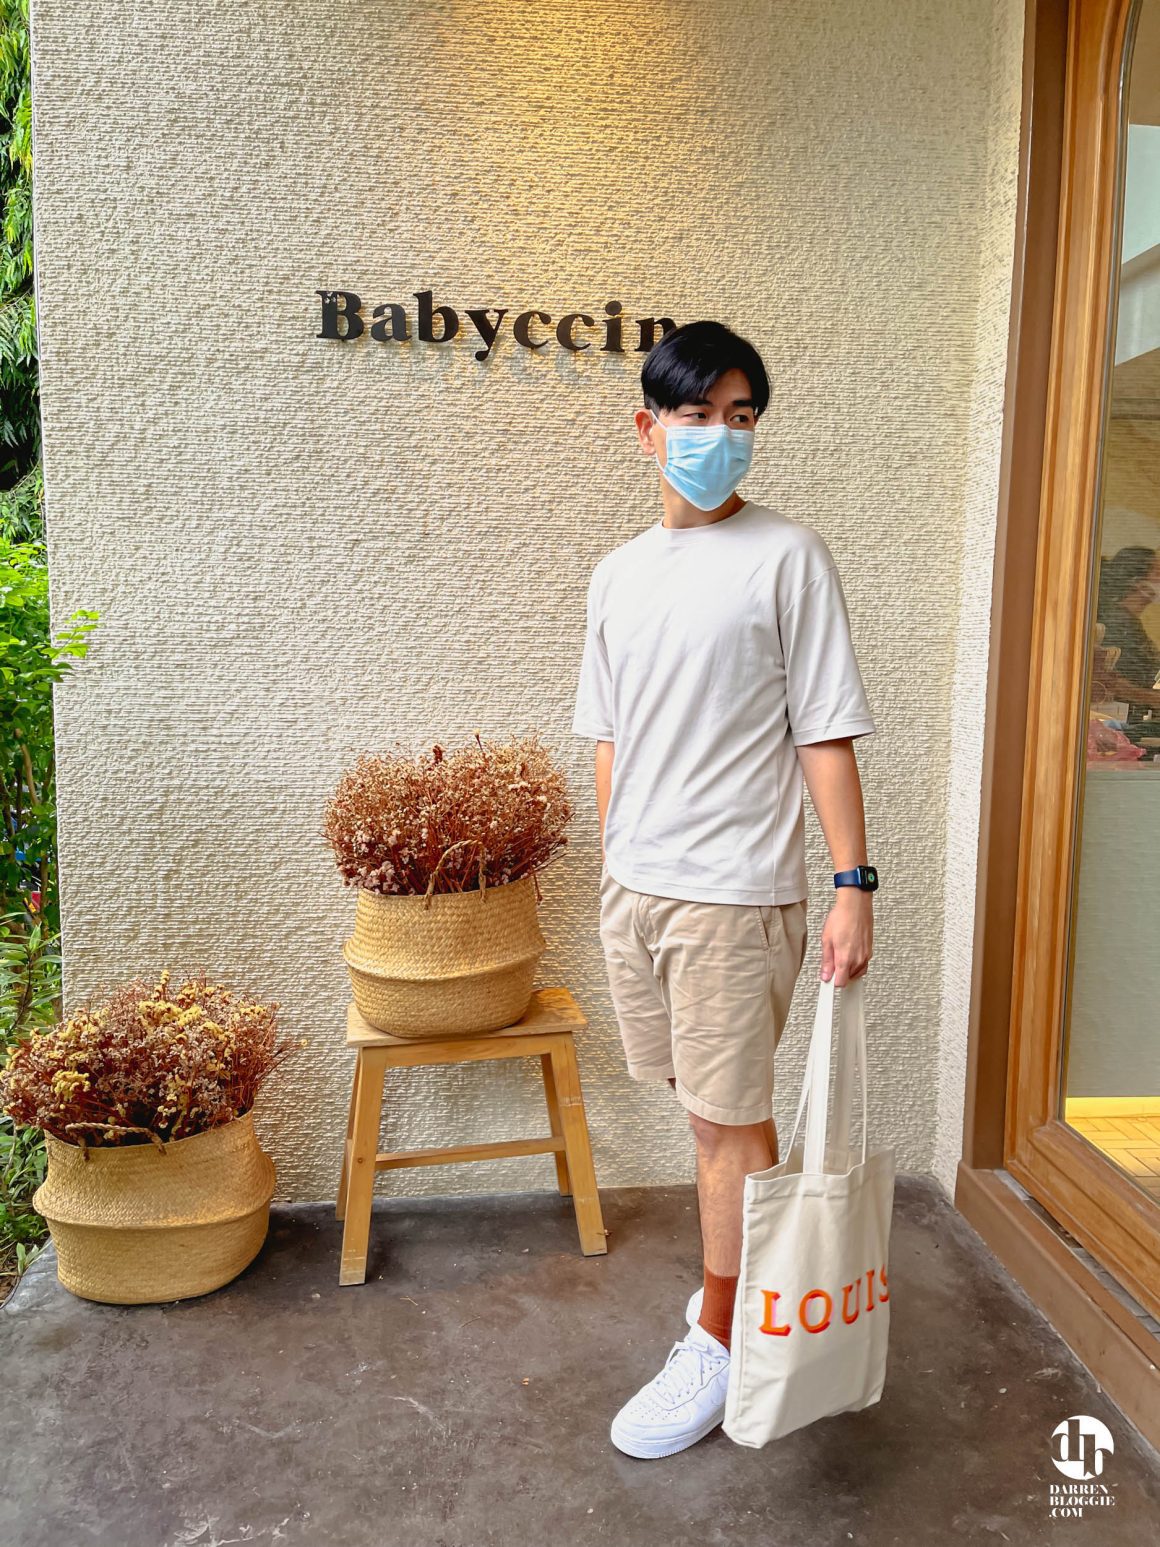 Babyccino-cafe-Bangkok-Thailand-darrenbloggie